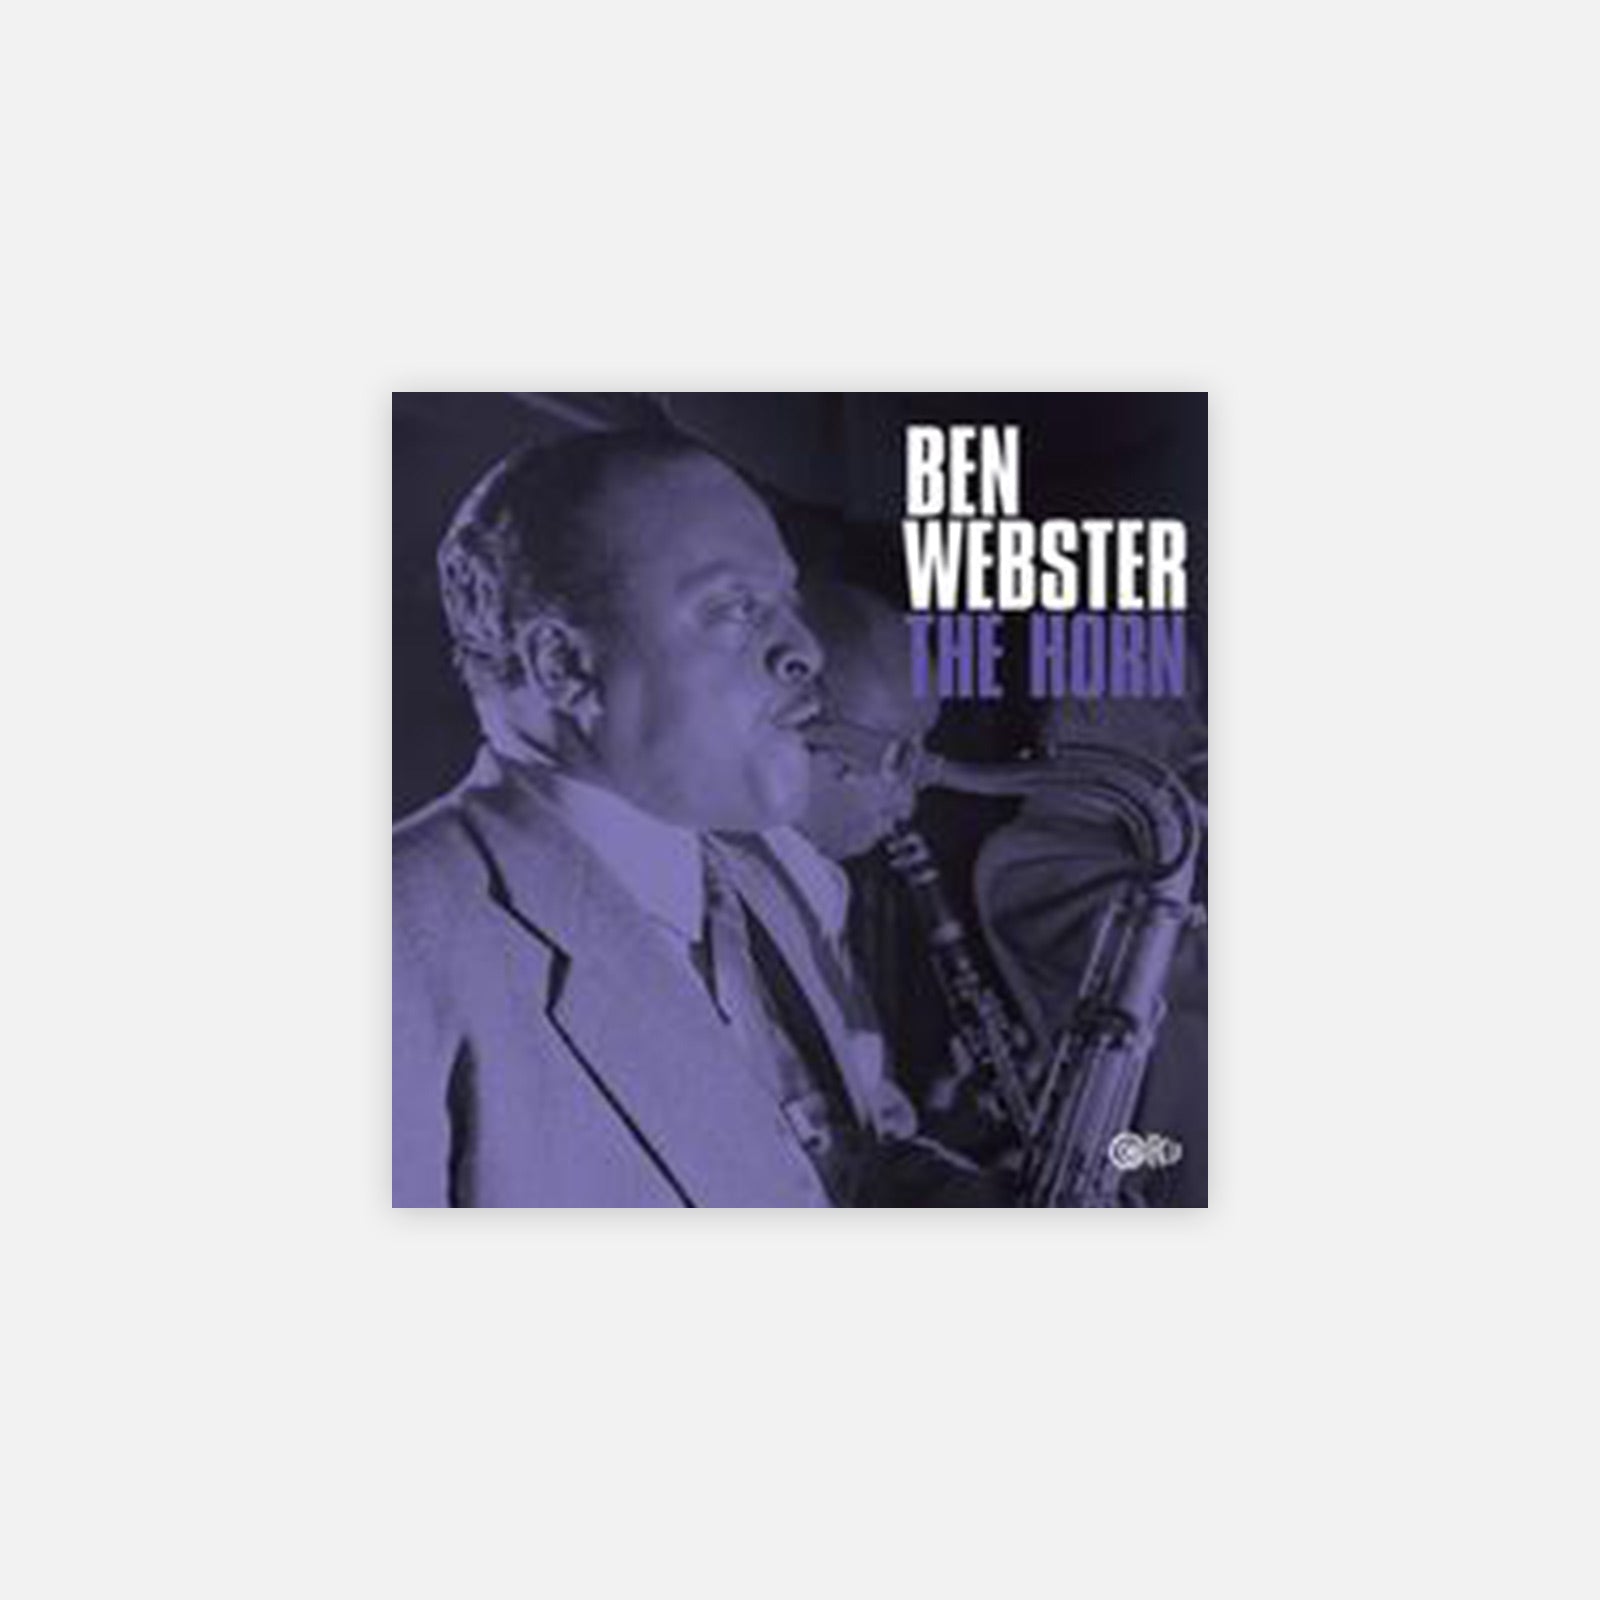 Ben Webster 'The Horn'